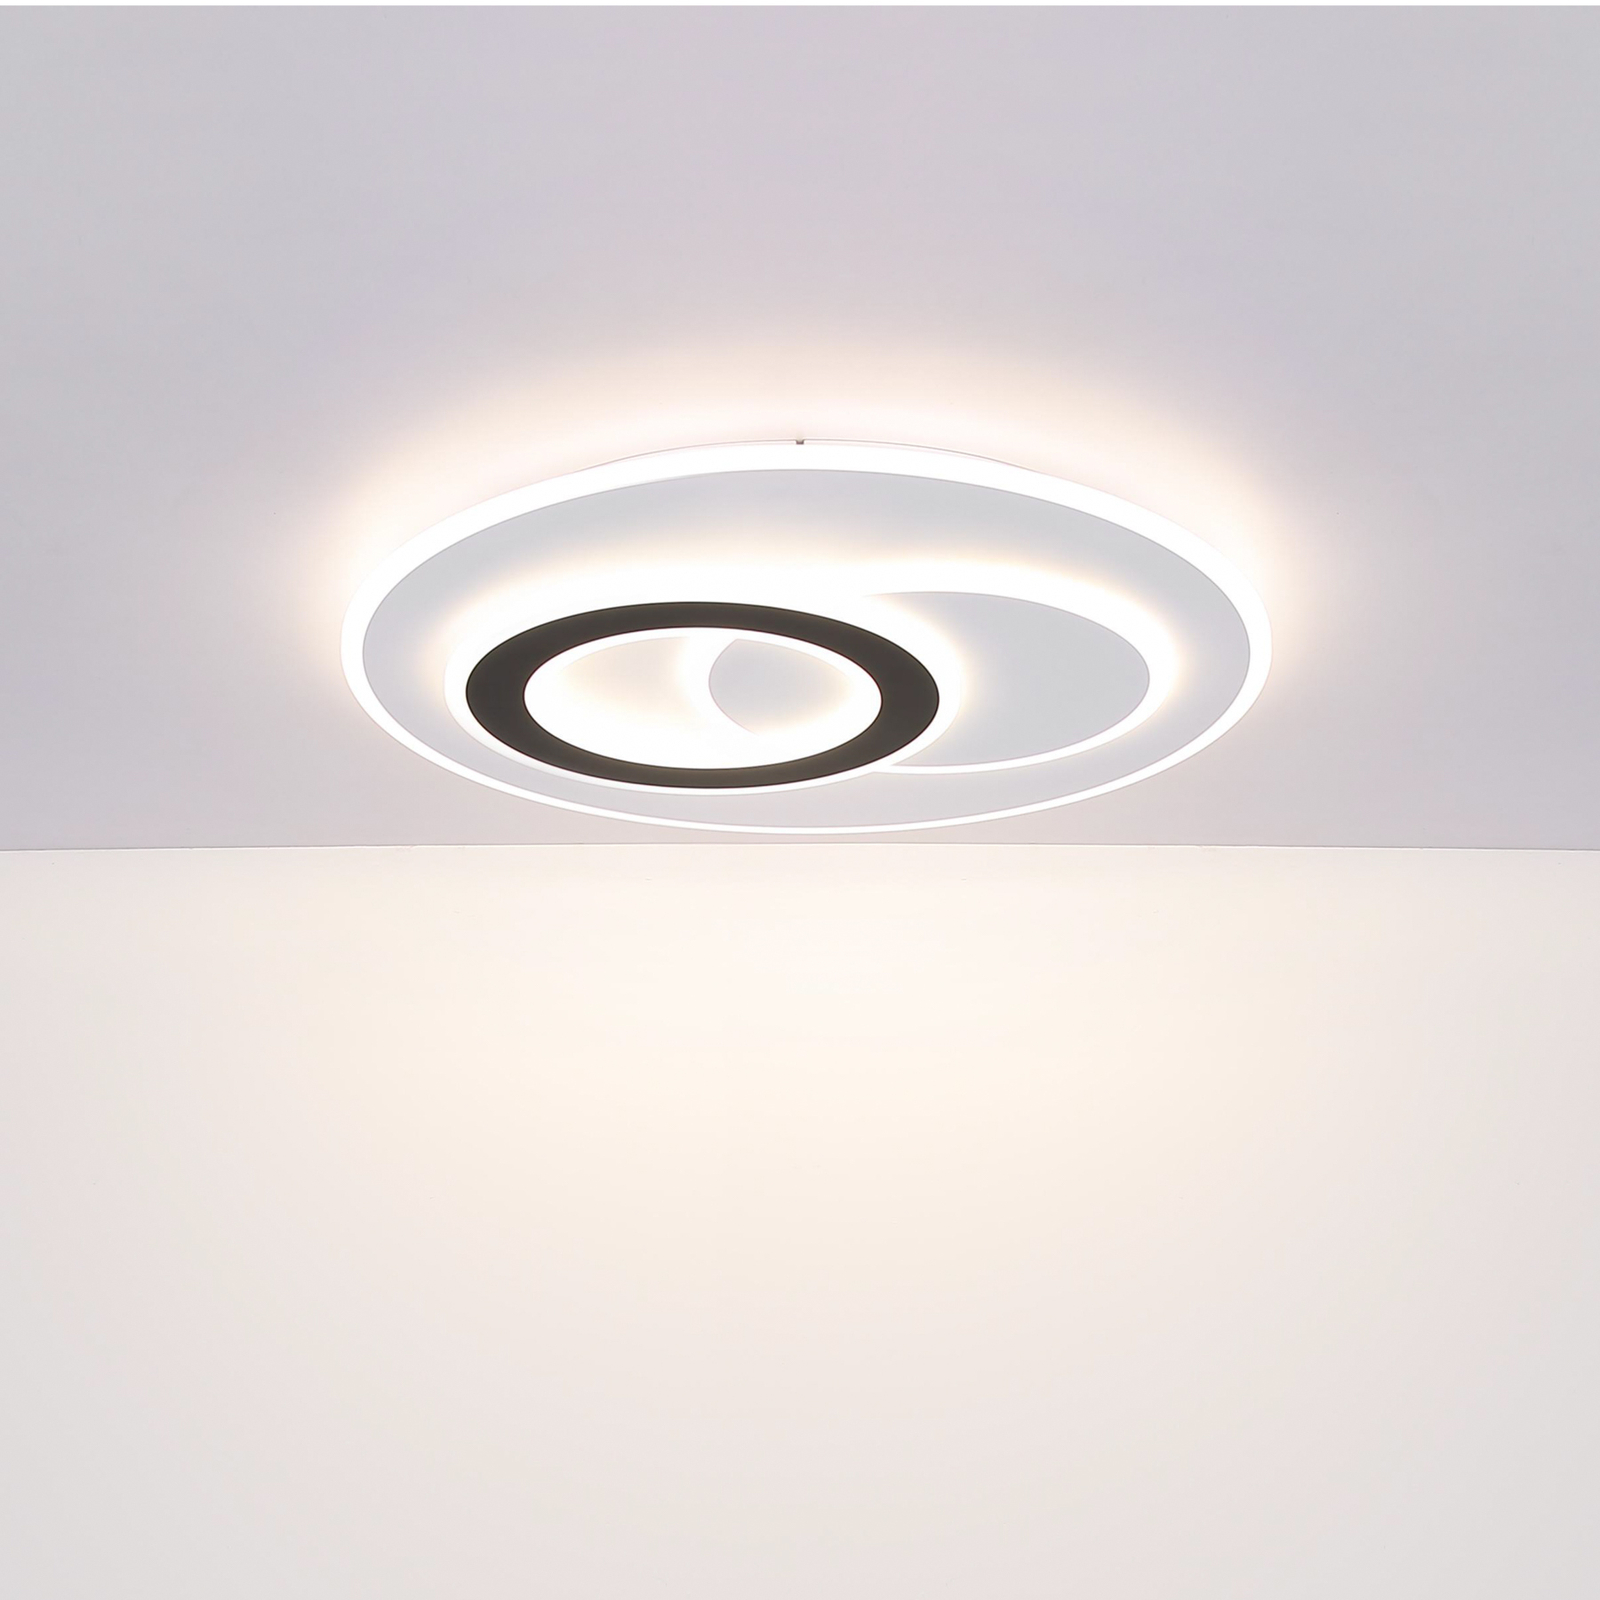 Chytré stropní svítidlo LED Jacques, bílá/černá, Ø 70 cm, CCT